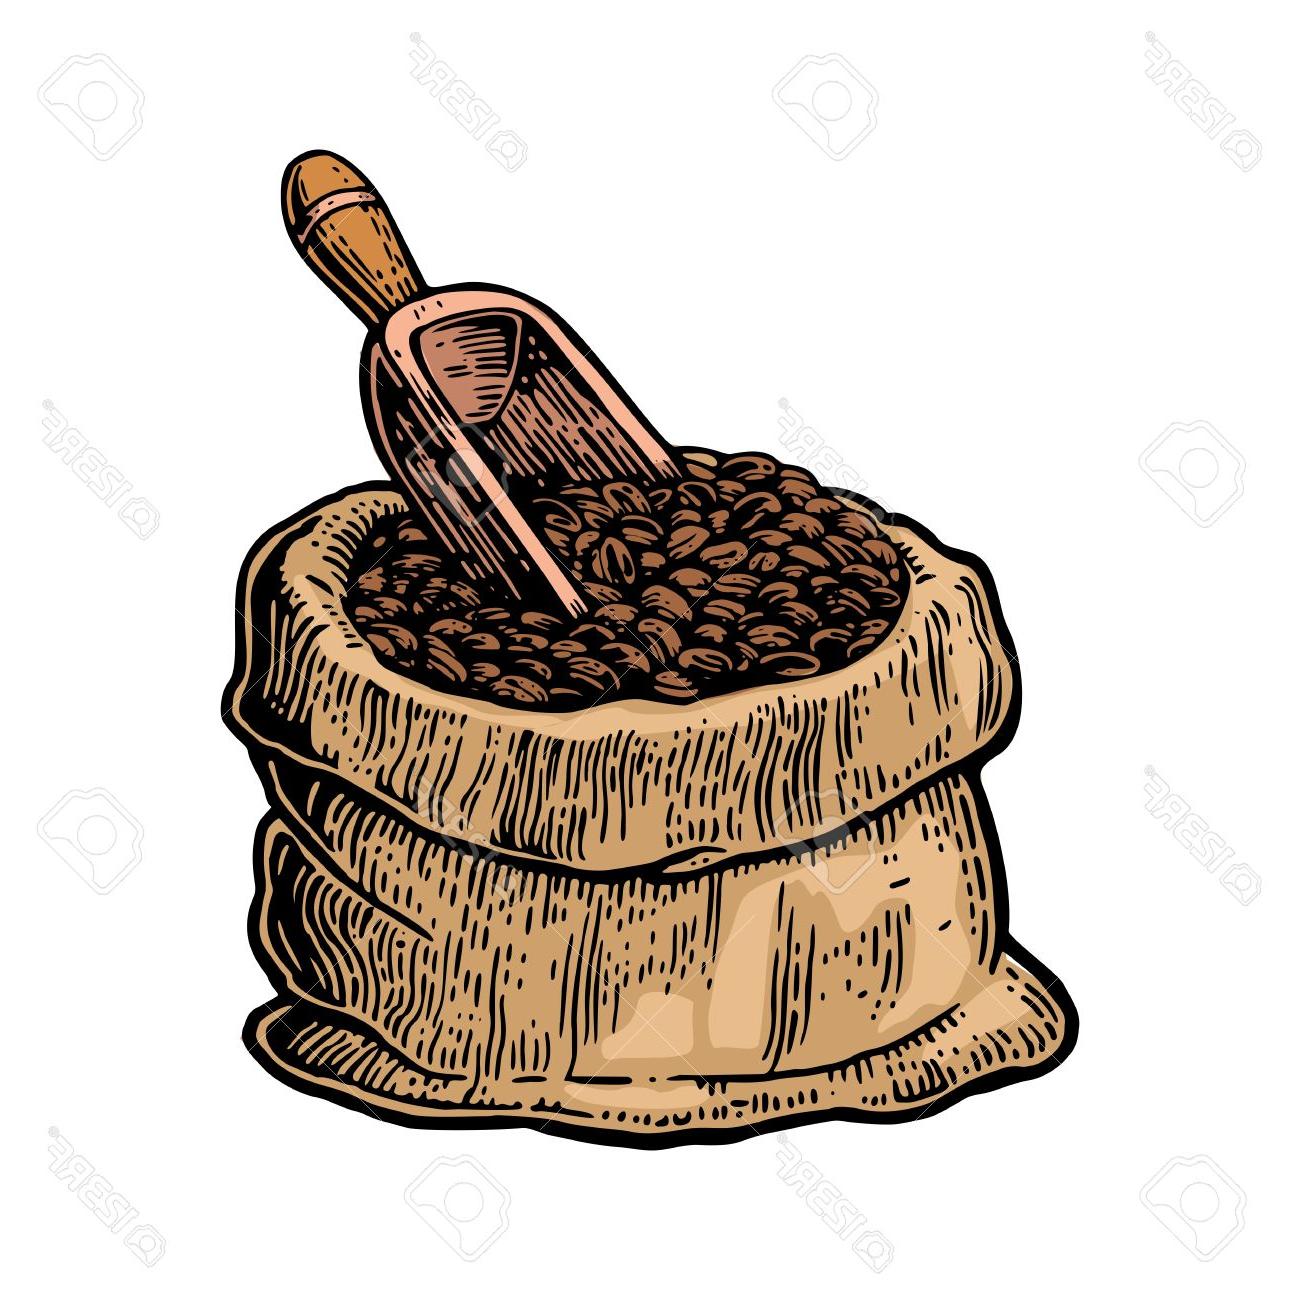 Best Free Coffee Bean Clip Art Shovel Photos » Free Vector Art.